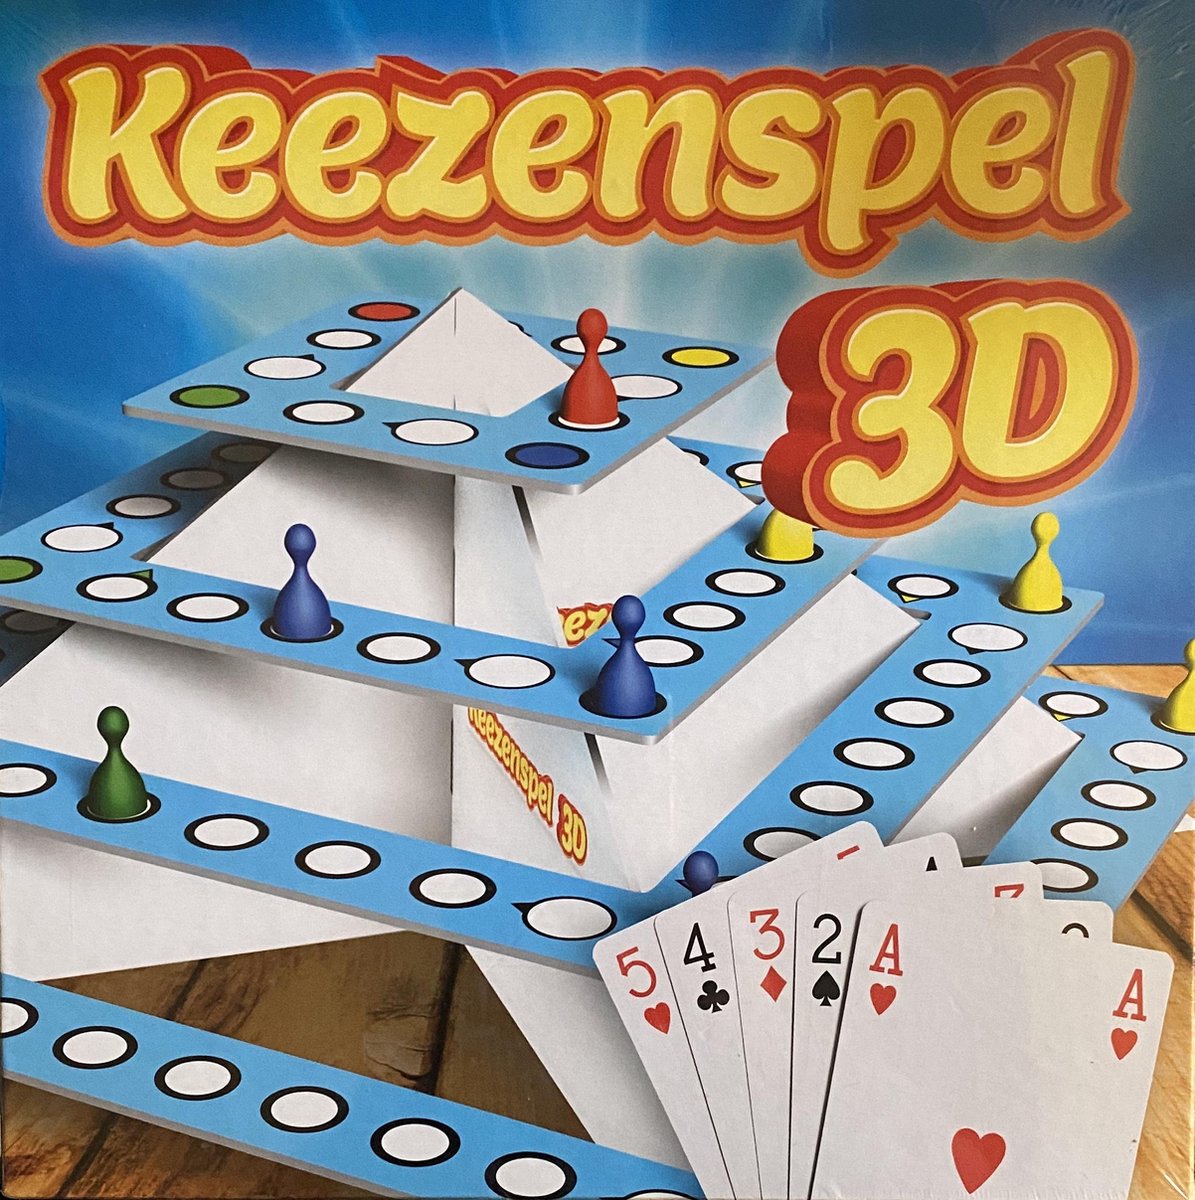 rooster Afrekenen tweeling 3D keezenspel | Games | bol.com